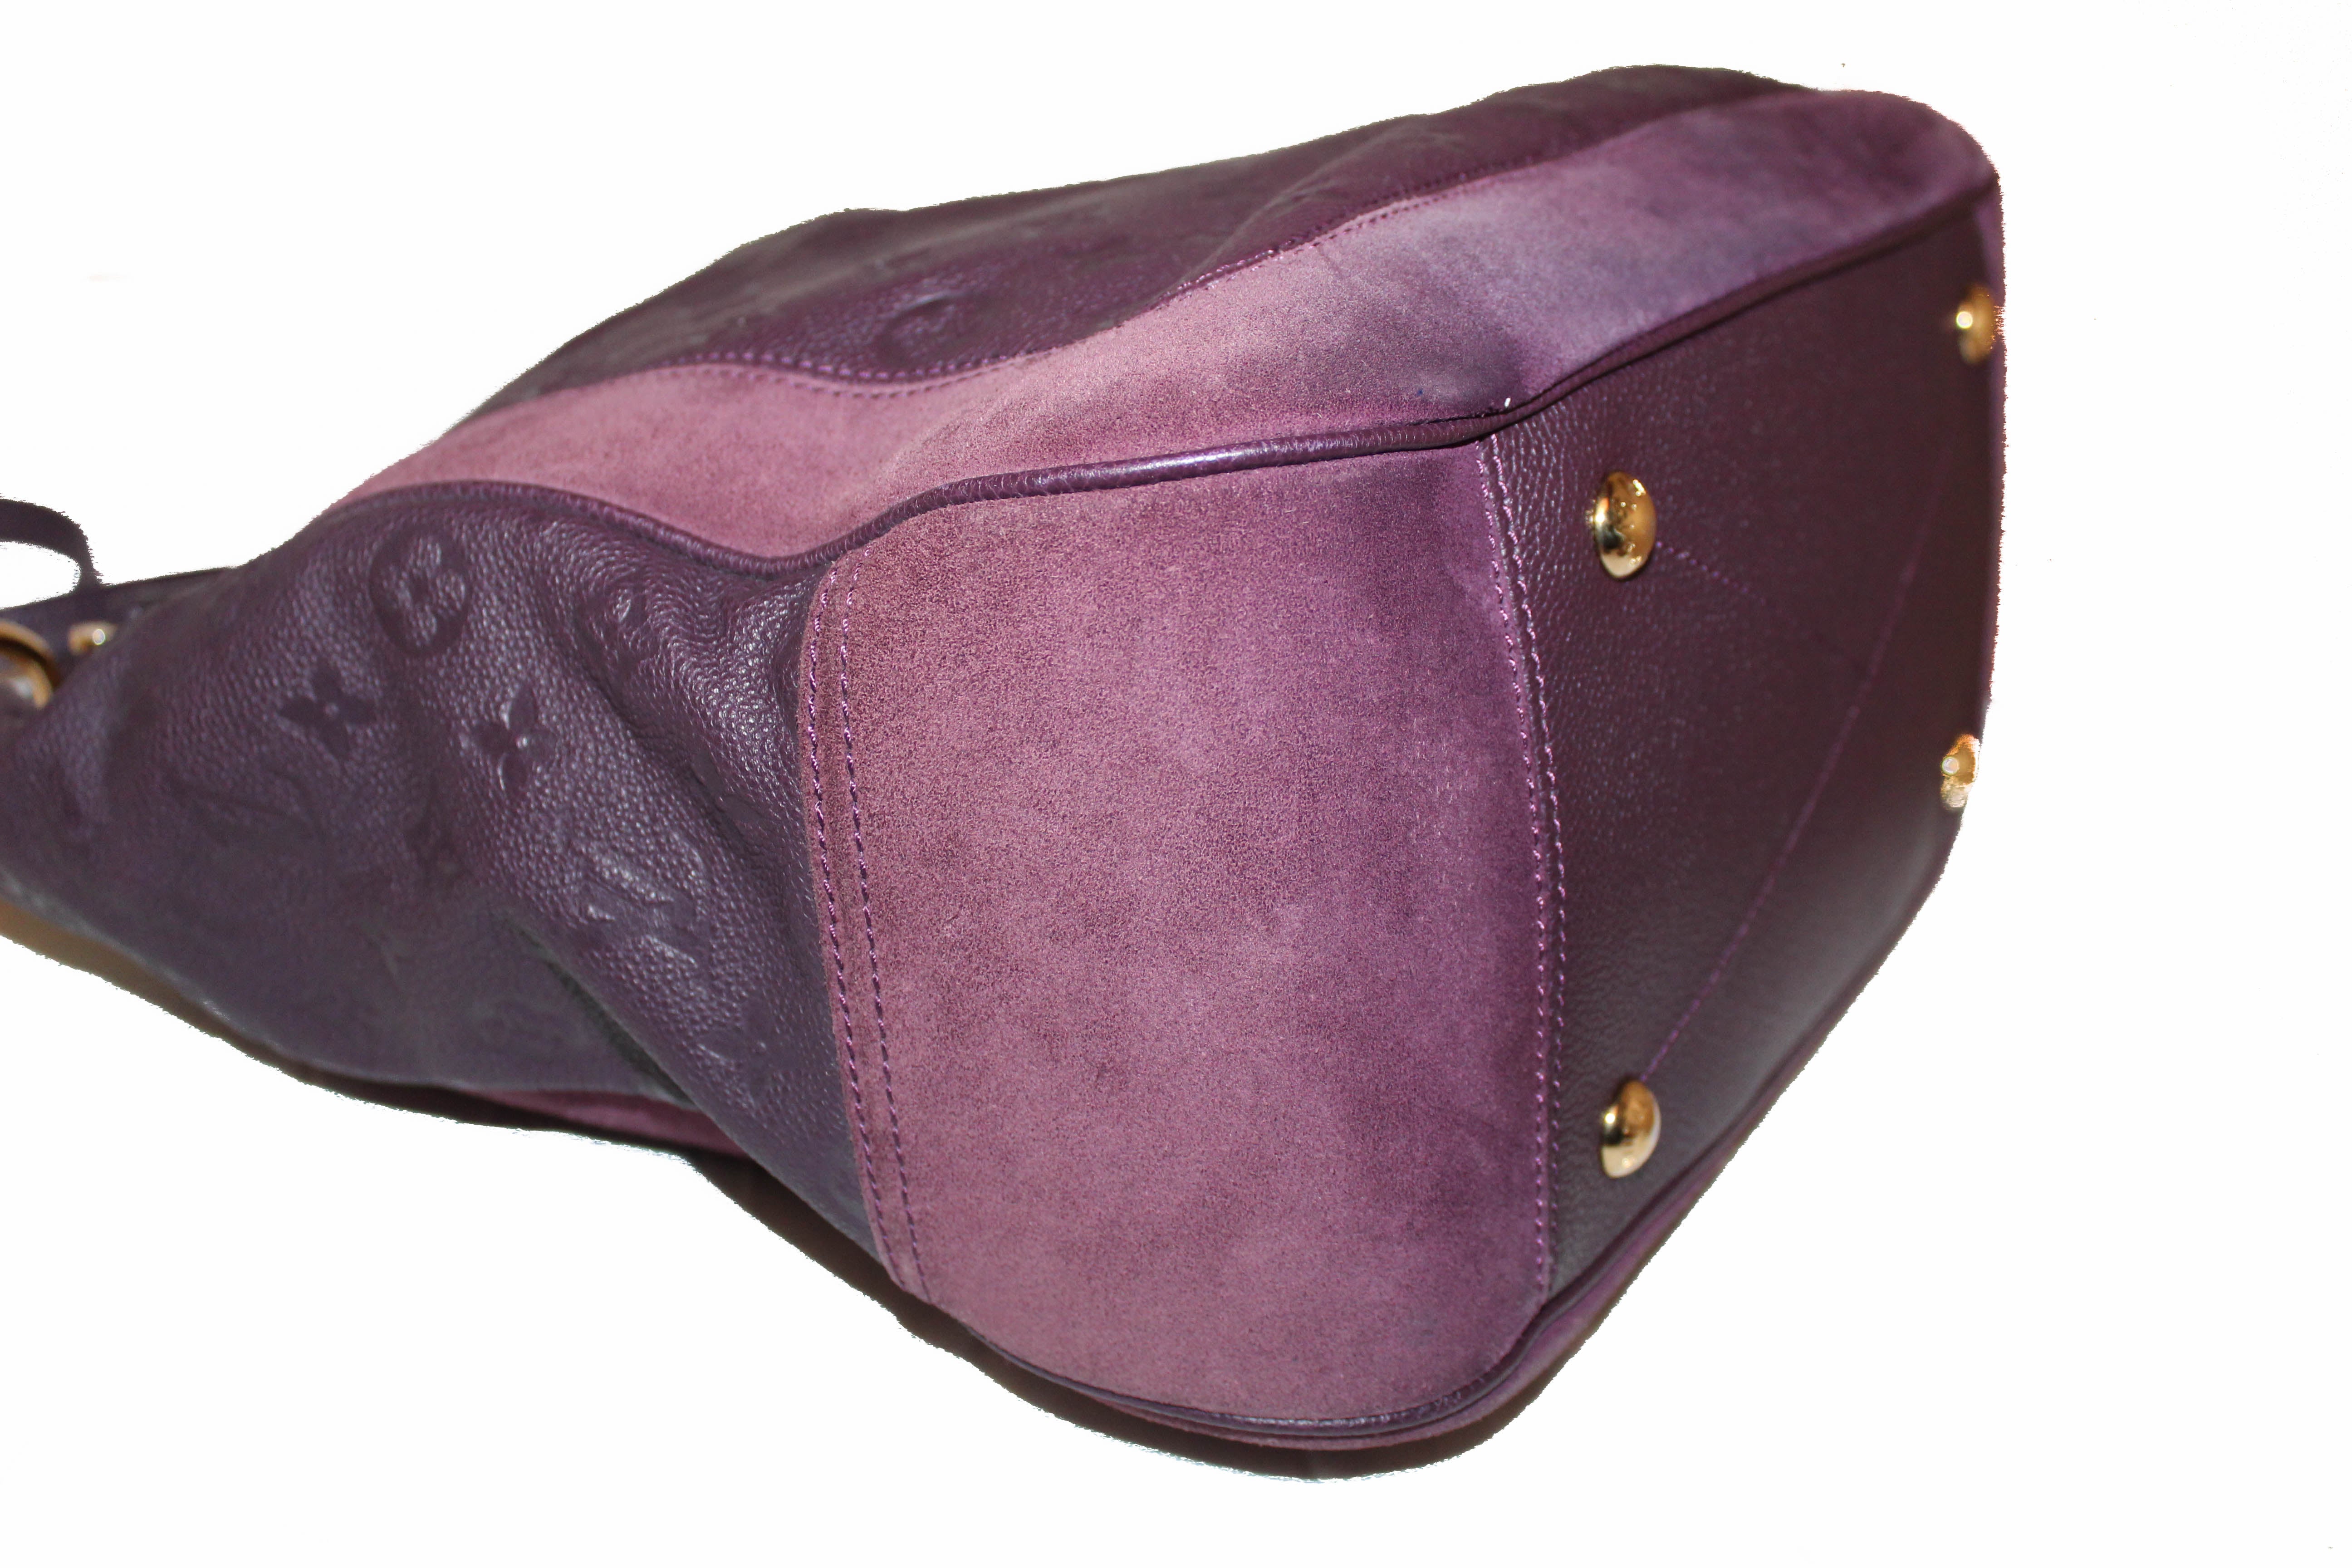 Authentic Louis Vuitton Purple Suede Empreinte Leather Audacieuse MM Shoulder Bag